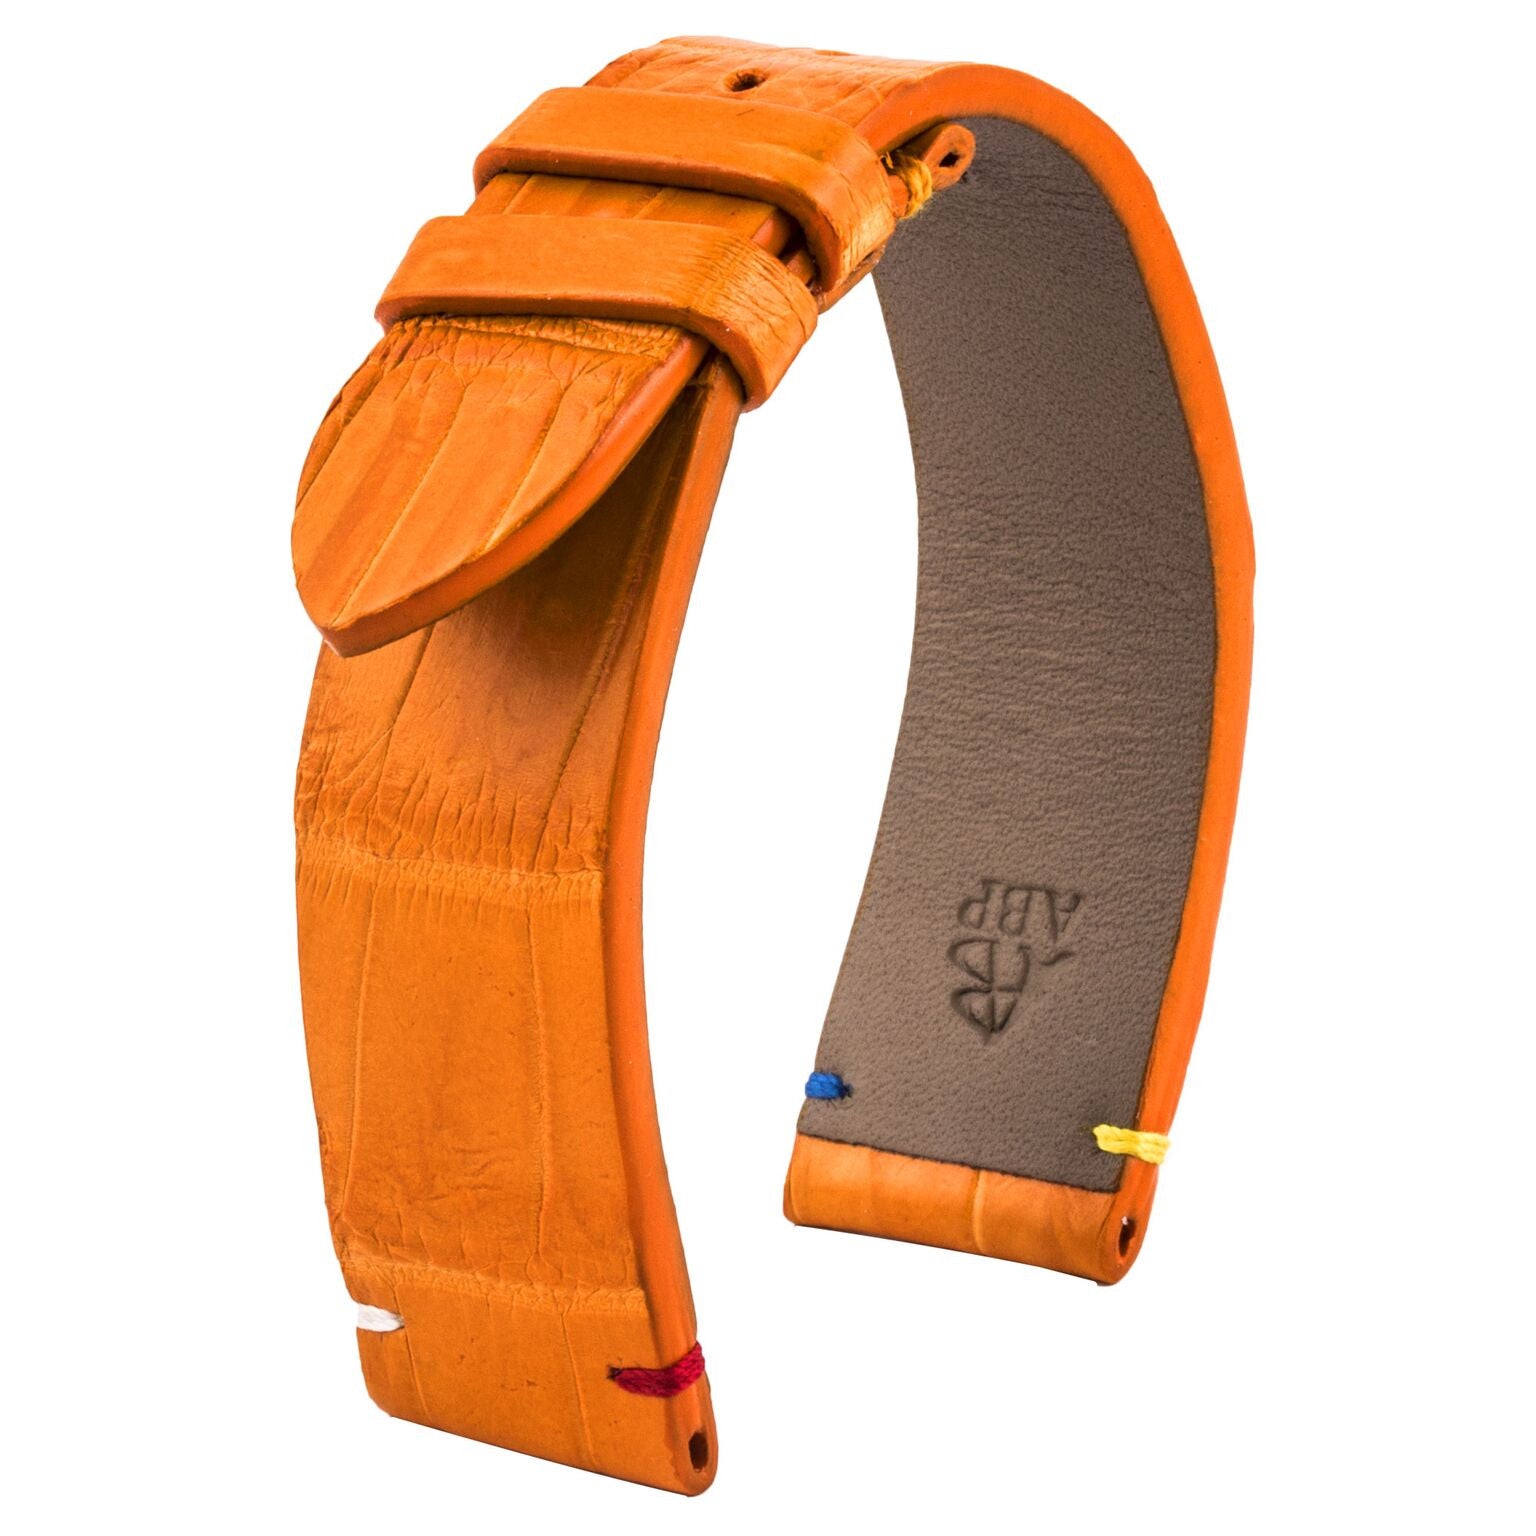 Bracelet de montre cuir - Religions - Alligator blanc / noir / orange - watch band leather strap - ABP Concept -